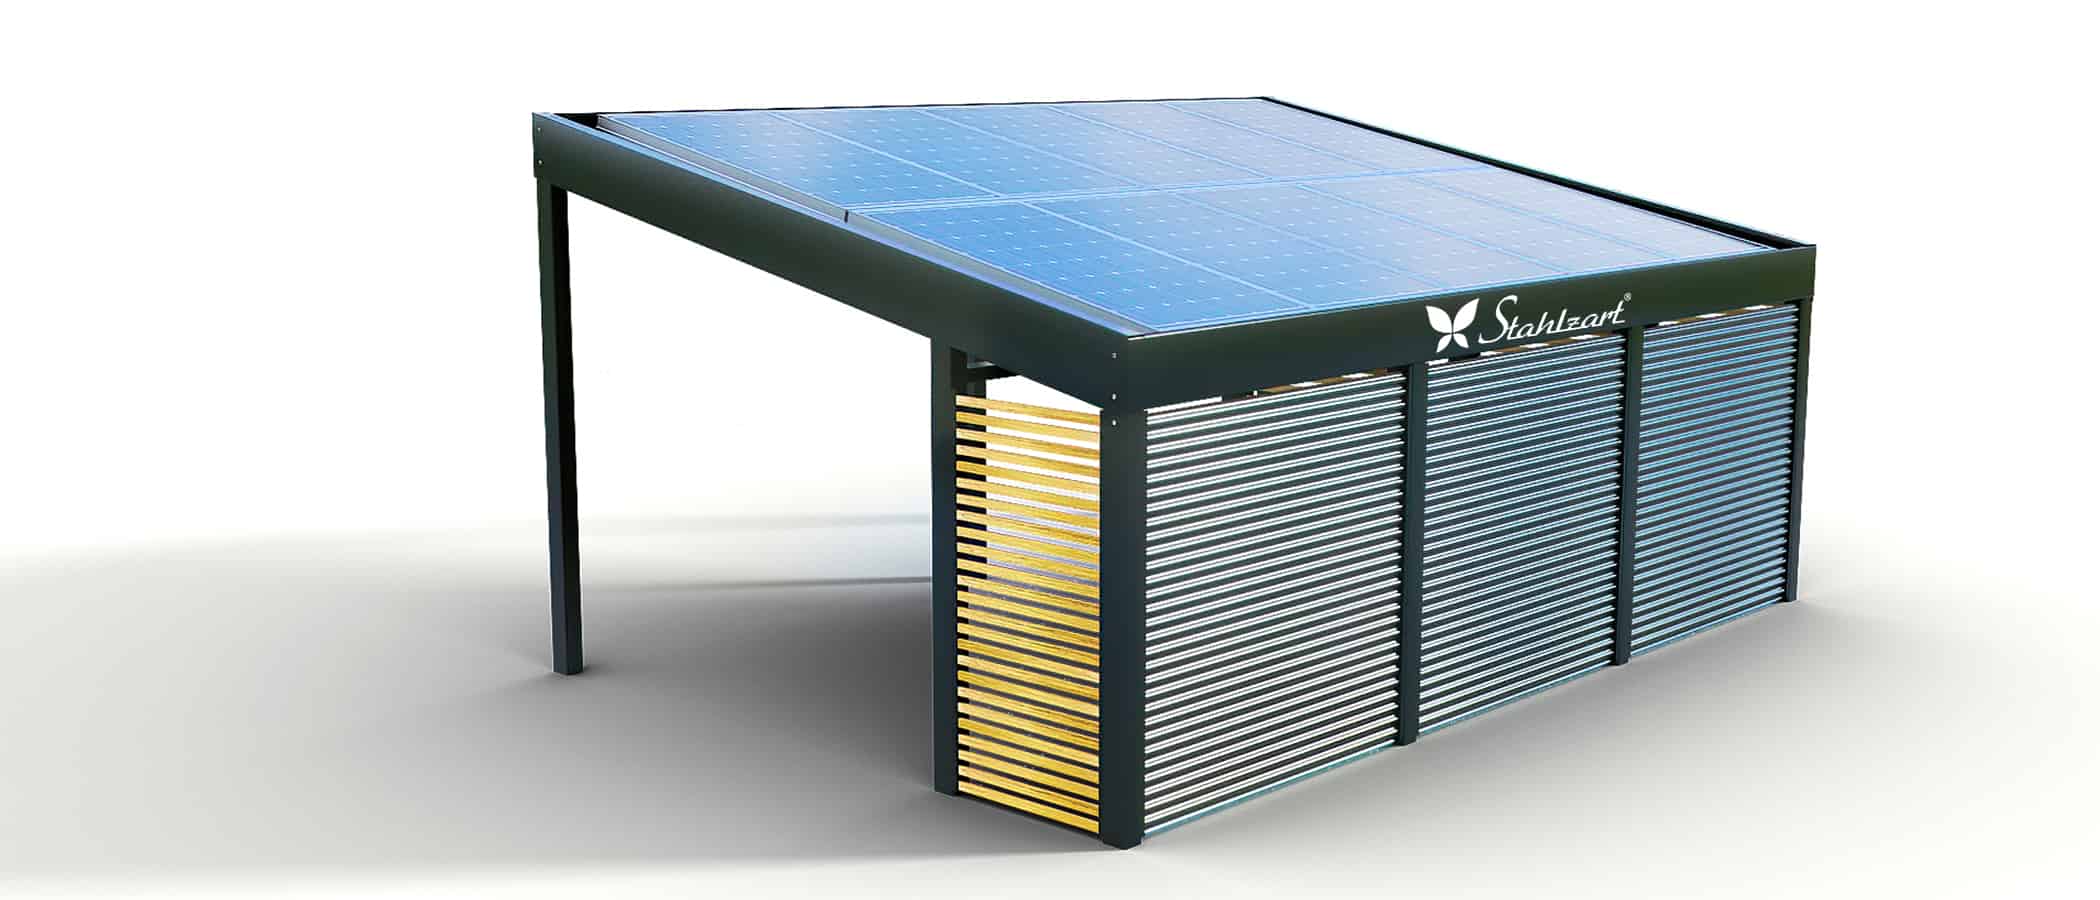 stahlzart-solar-carport-carports-e-fahrzeuge-solaranlage-strom-solarcarport-e-auto-kosten-30-jahre-carportdach-photovoltaik-schraegdach-stahlblech-seitenwand-vorteile-fragen-holz-metall-stahl